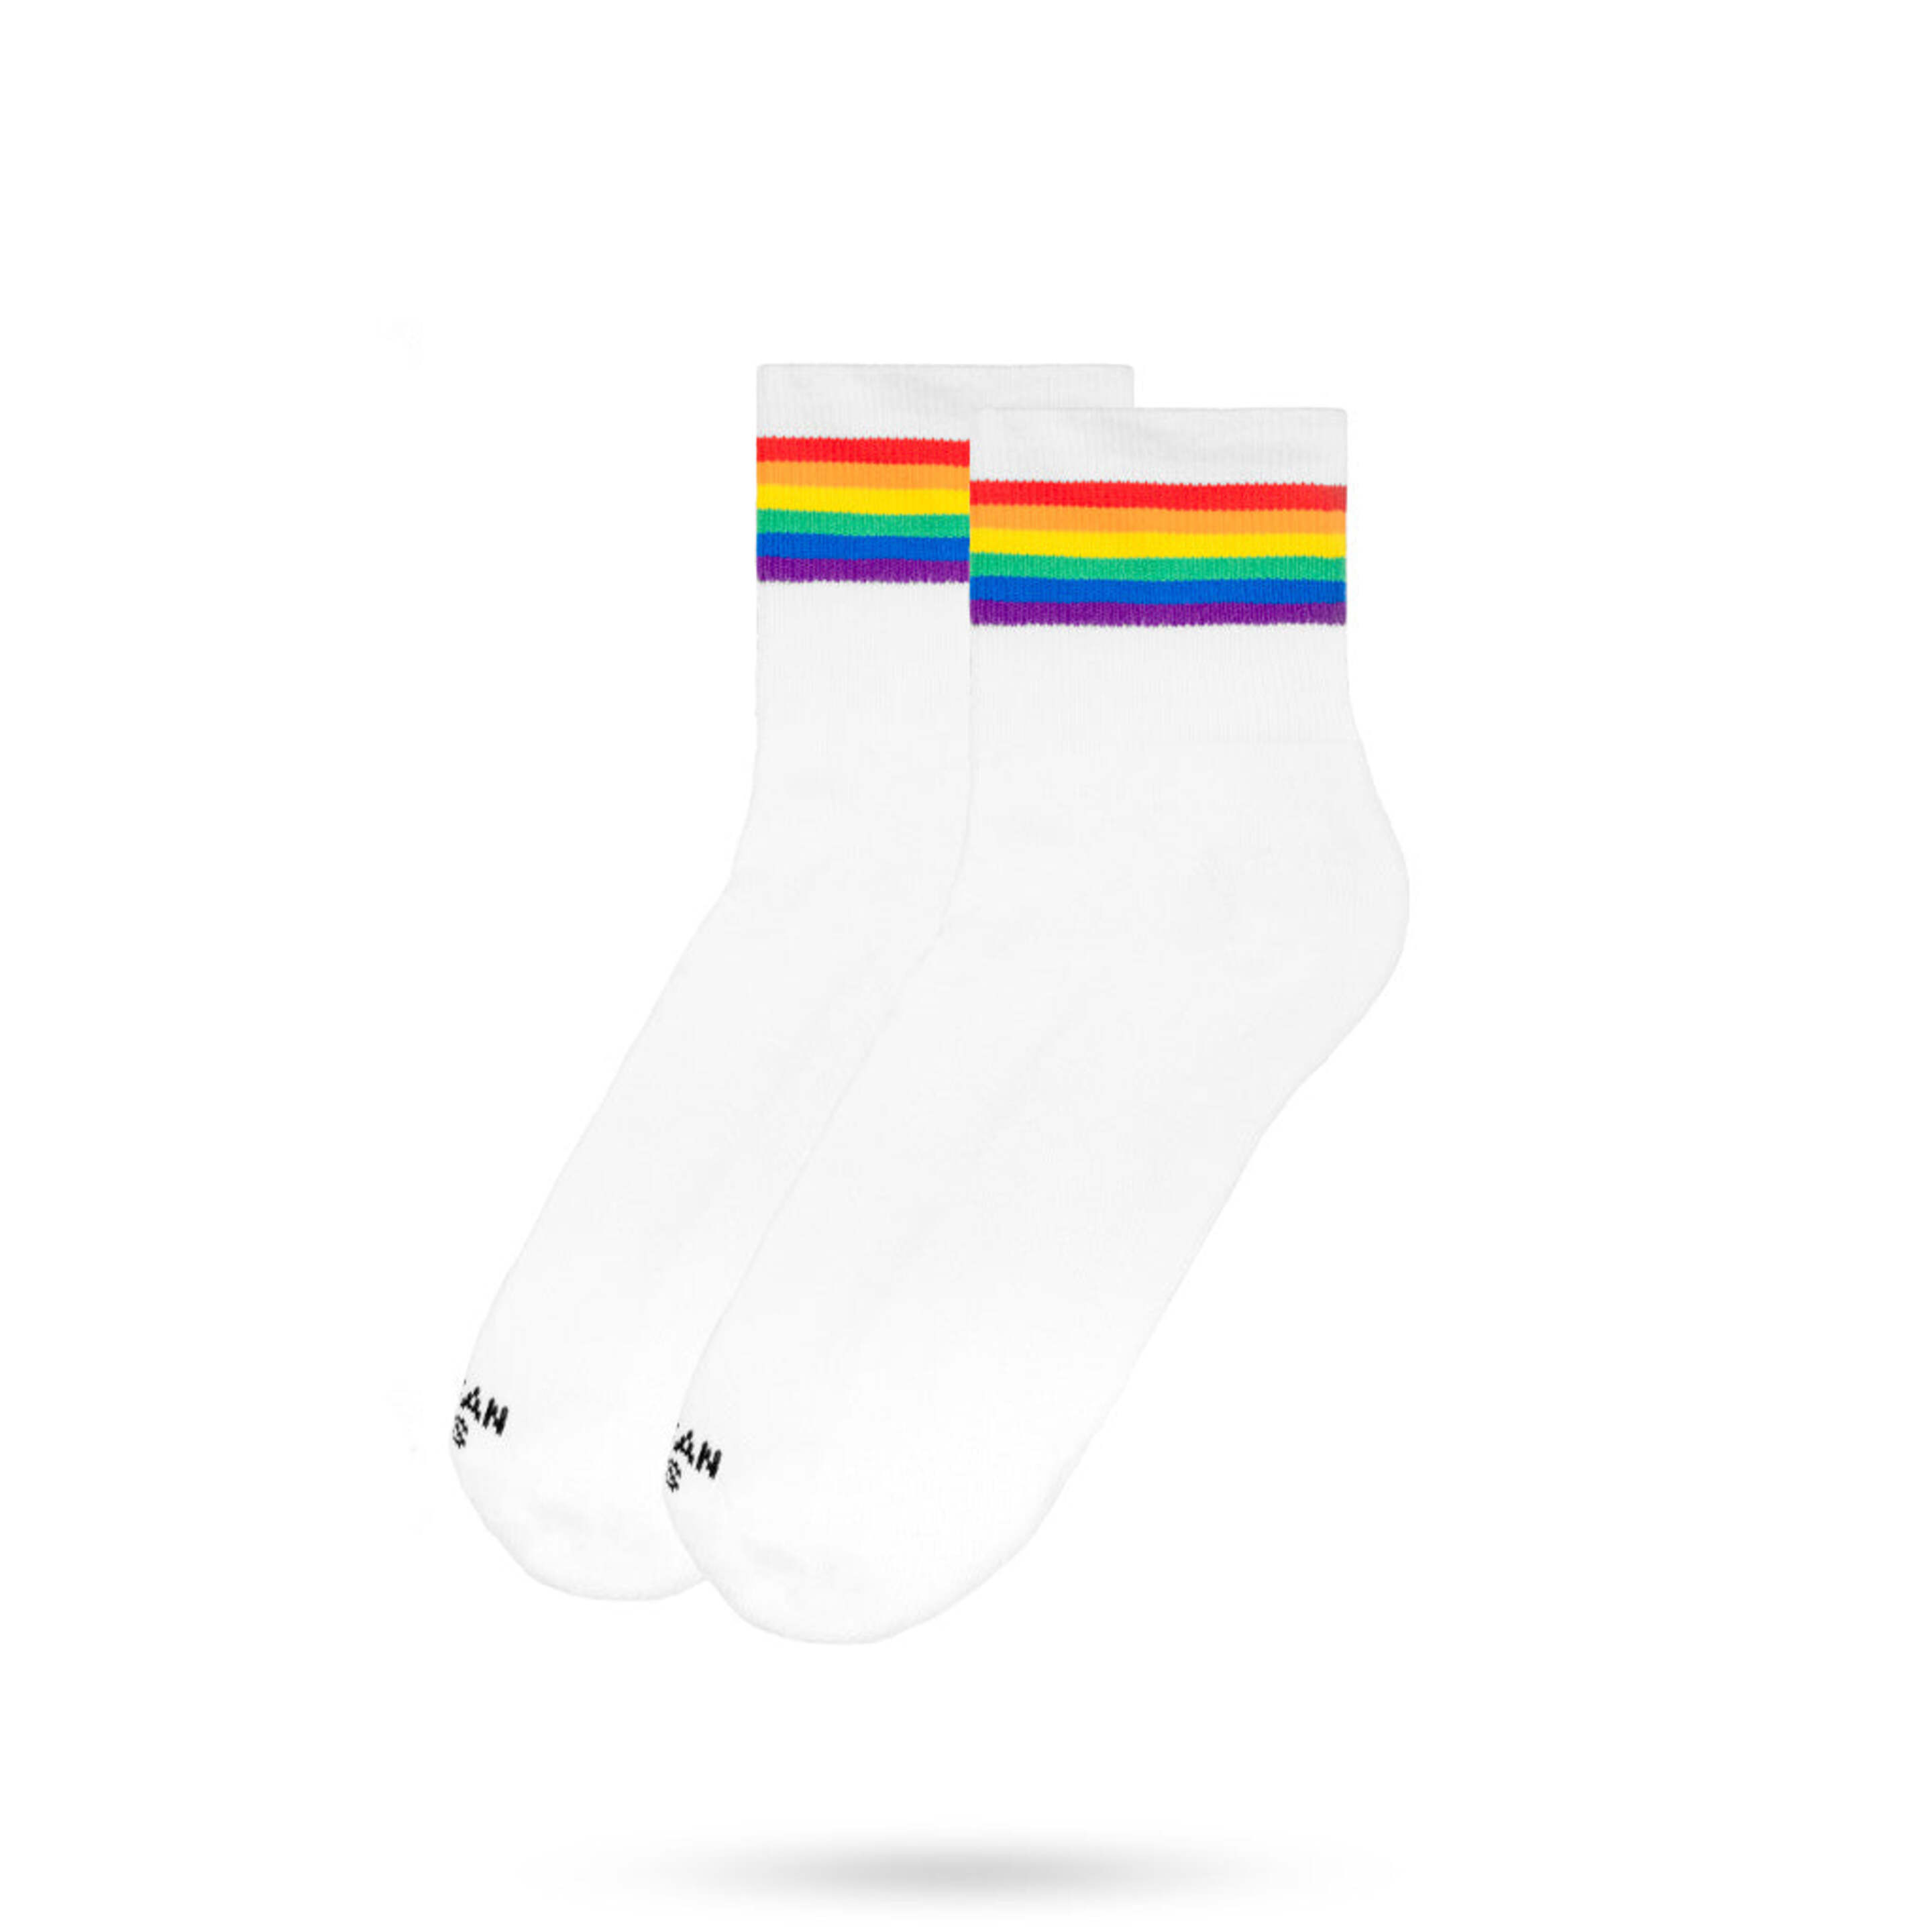 Calcetines American Socks   Rainbow Pride  Ankle High